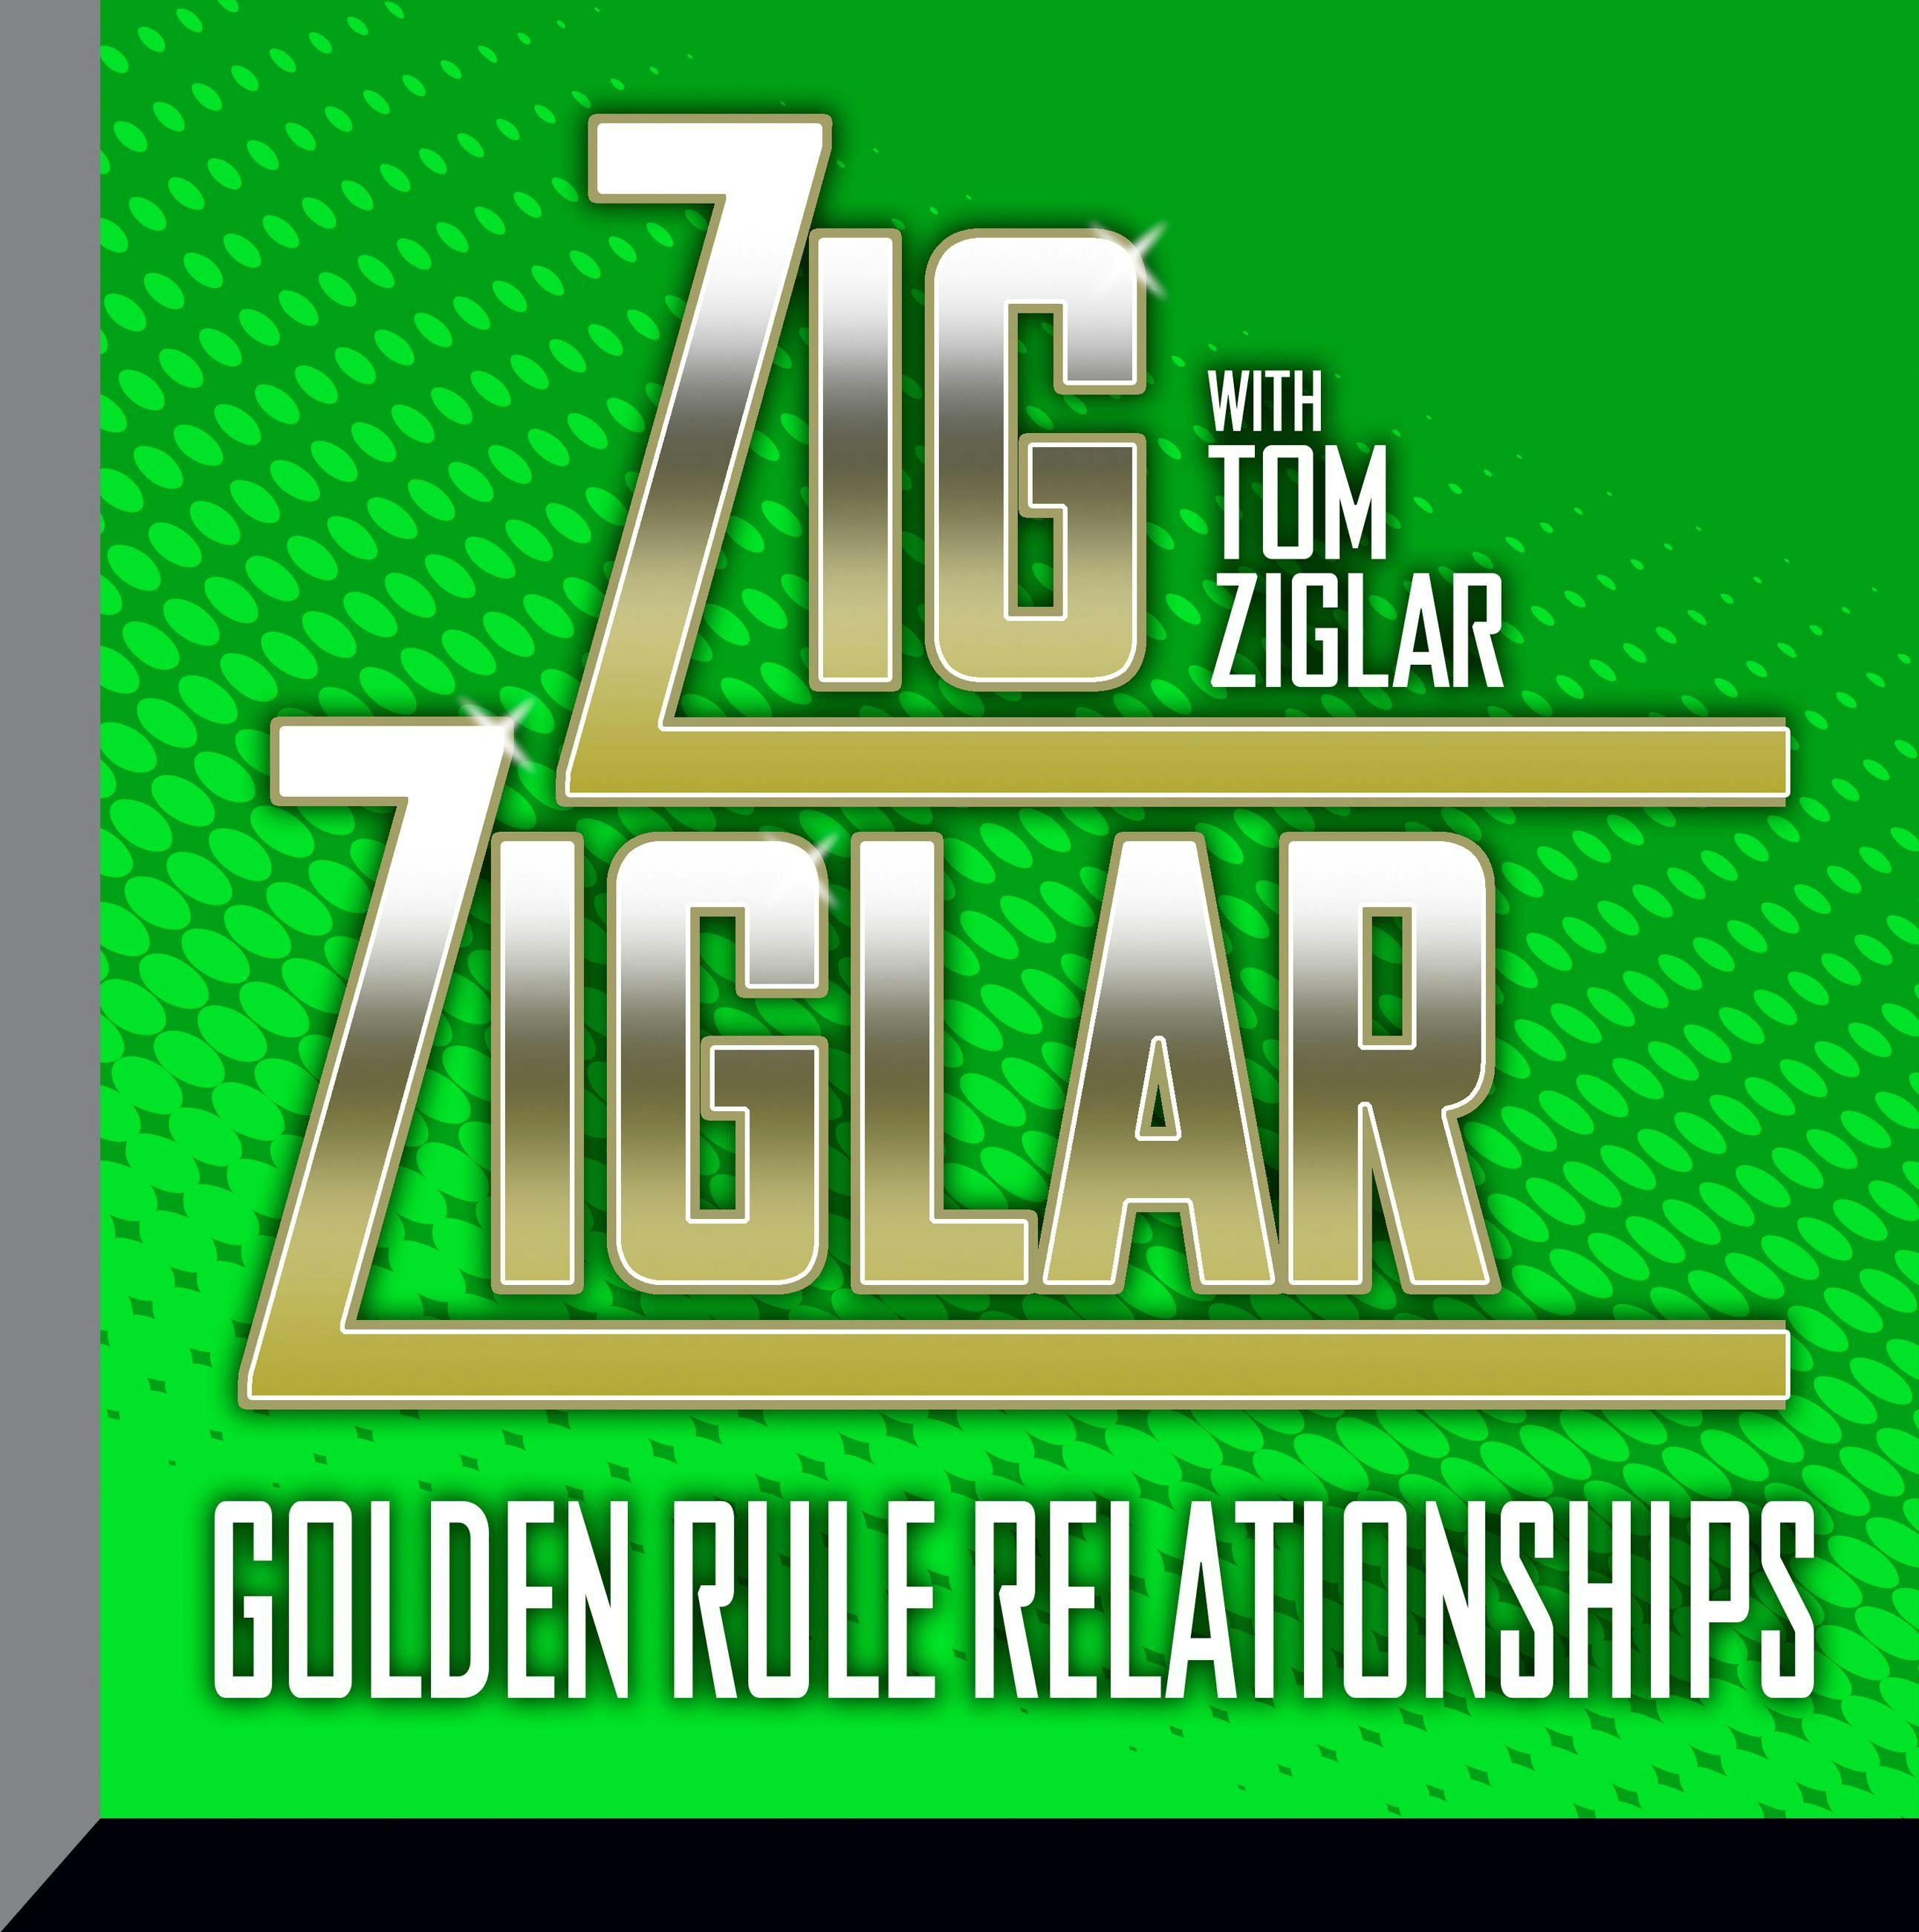 Golden Rule Relationships - undefined